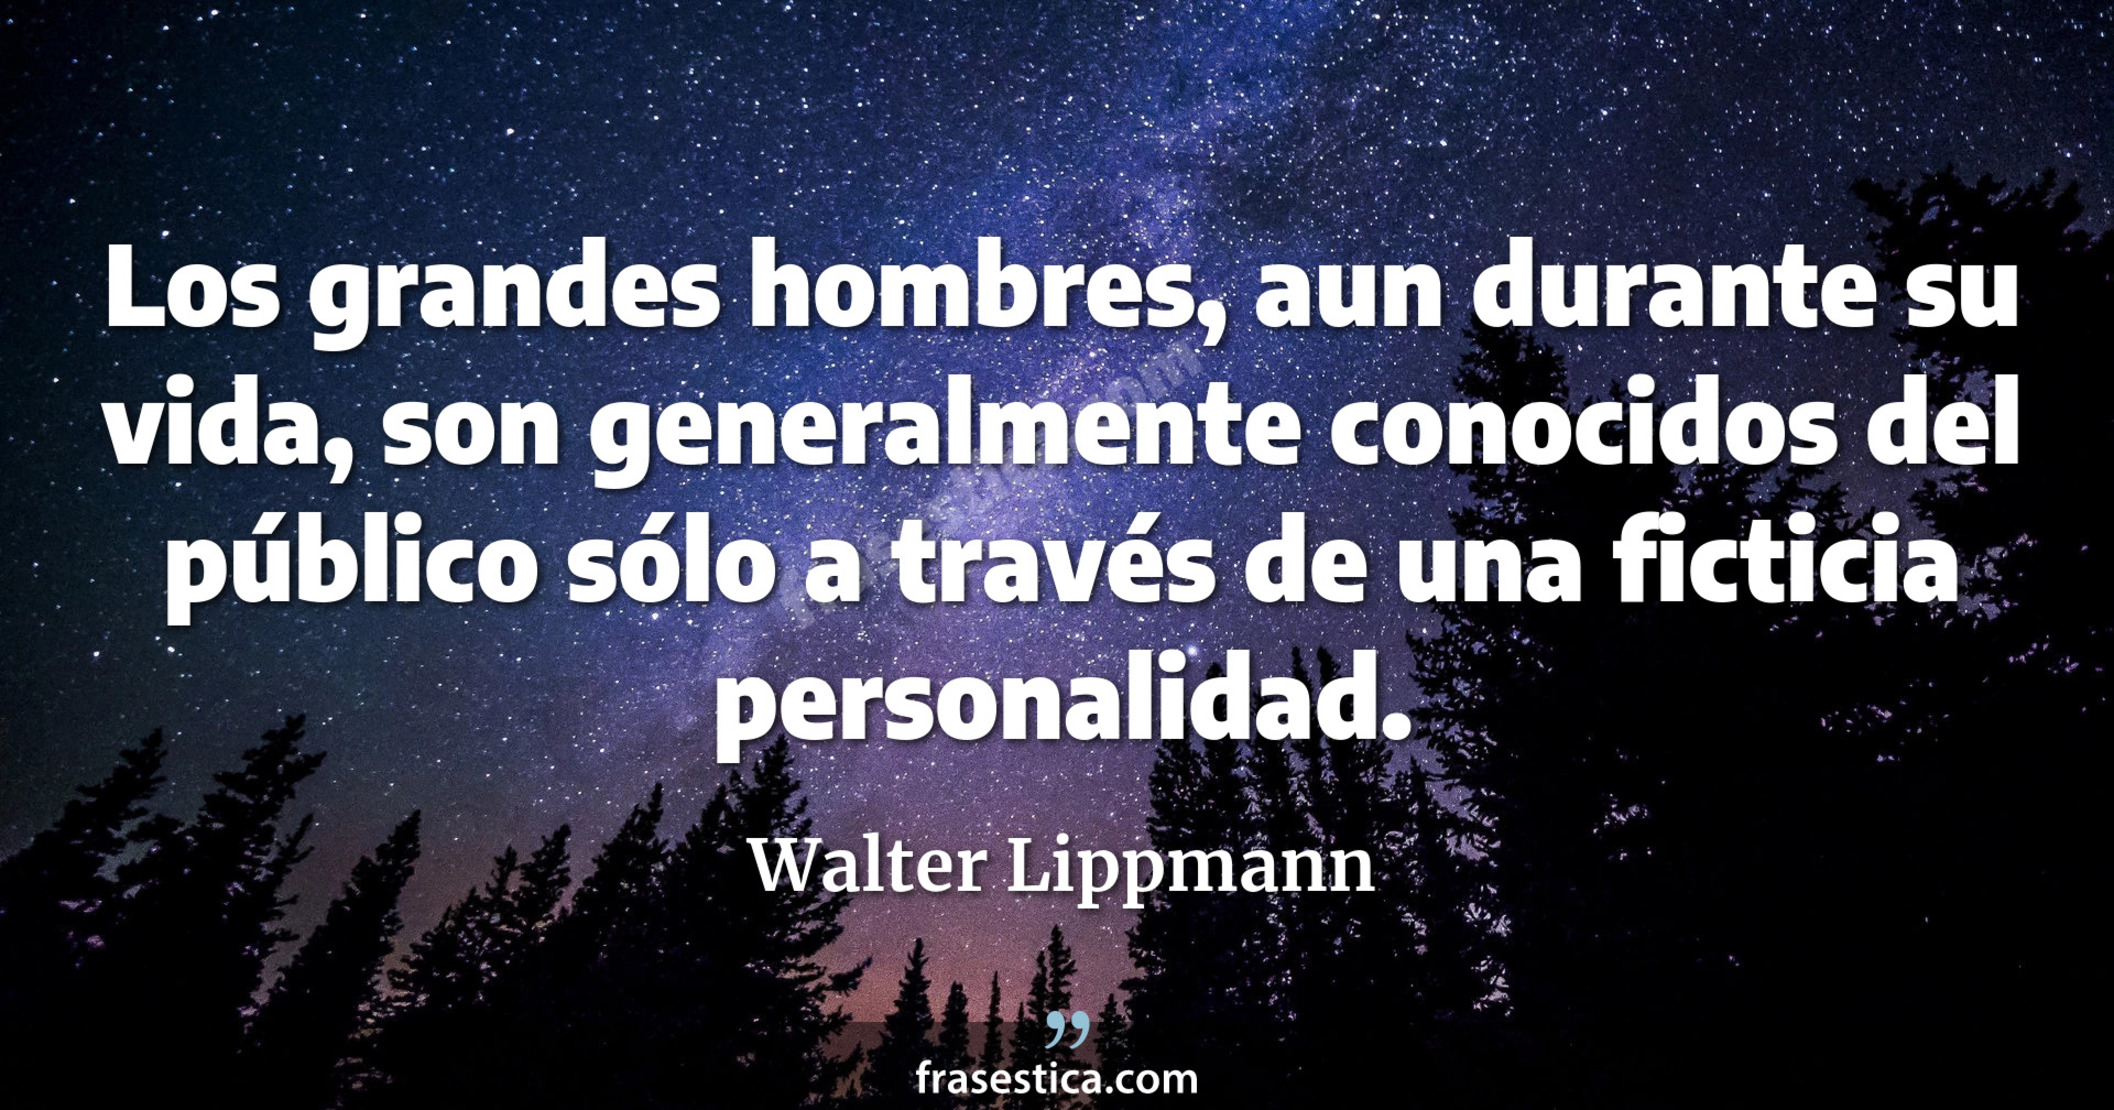 Los grandes hombres, aun durante su vida, son generalmente conocidos del público sólo a través de una ficticia personalidad. - Walter Lippmann